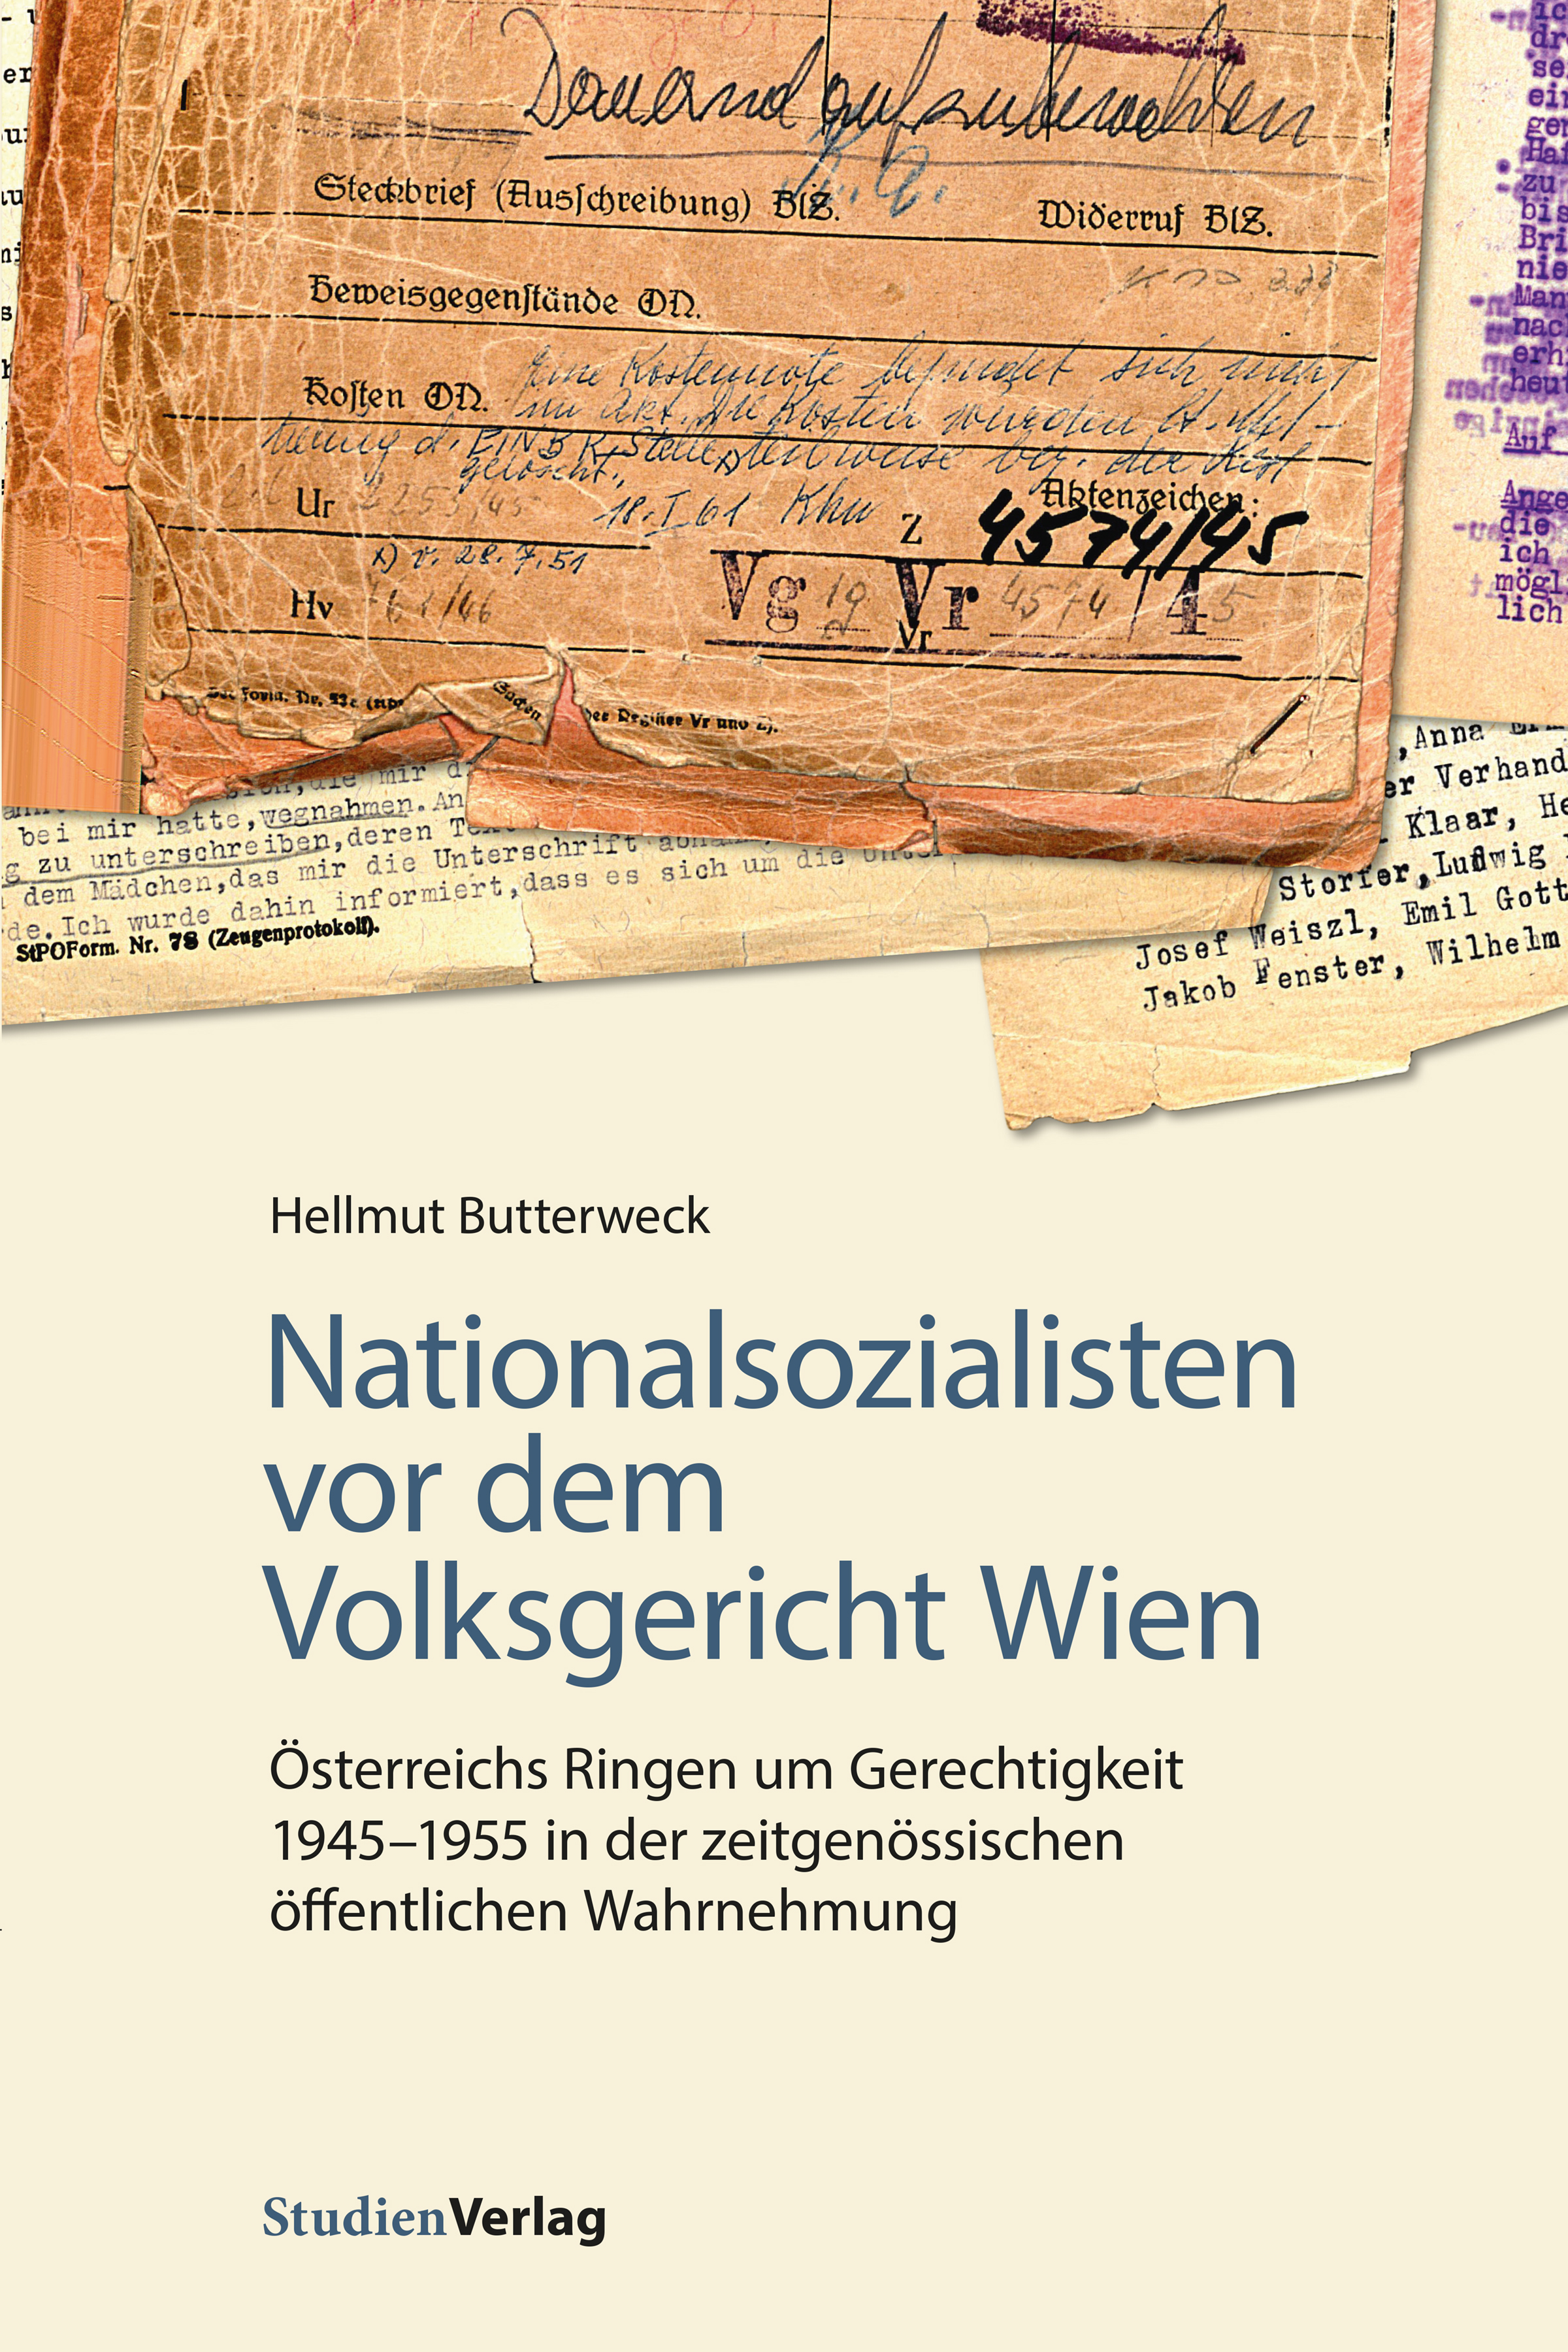 Hellmut Butterweck Nationalsozialisten vor dem Volksgericht Wien